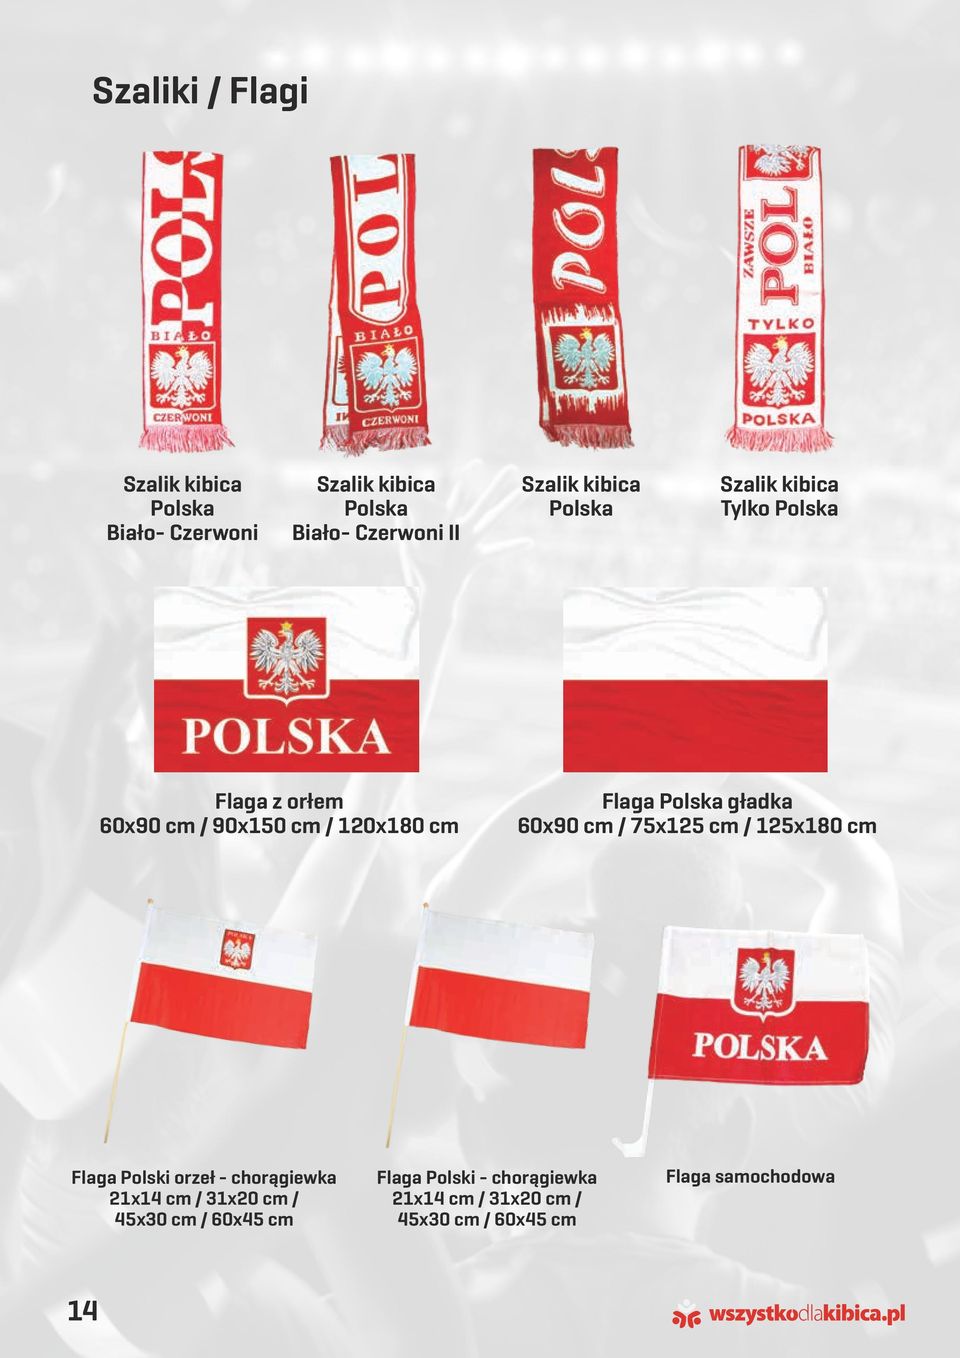 cm / 60x45 cm 14 Szalik kibica Polska Szalik kibica Tylko Polska Flaga Polska gładka 60x90 cm /